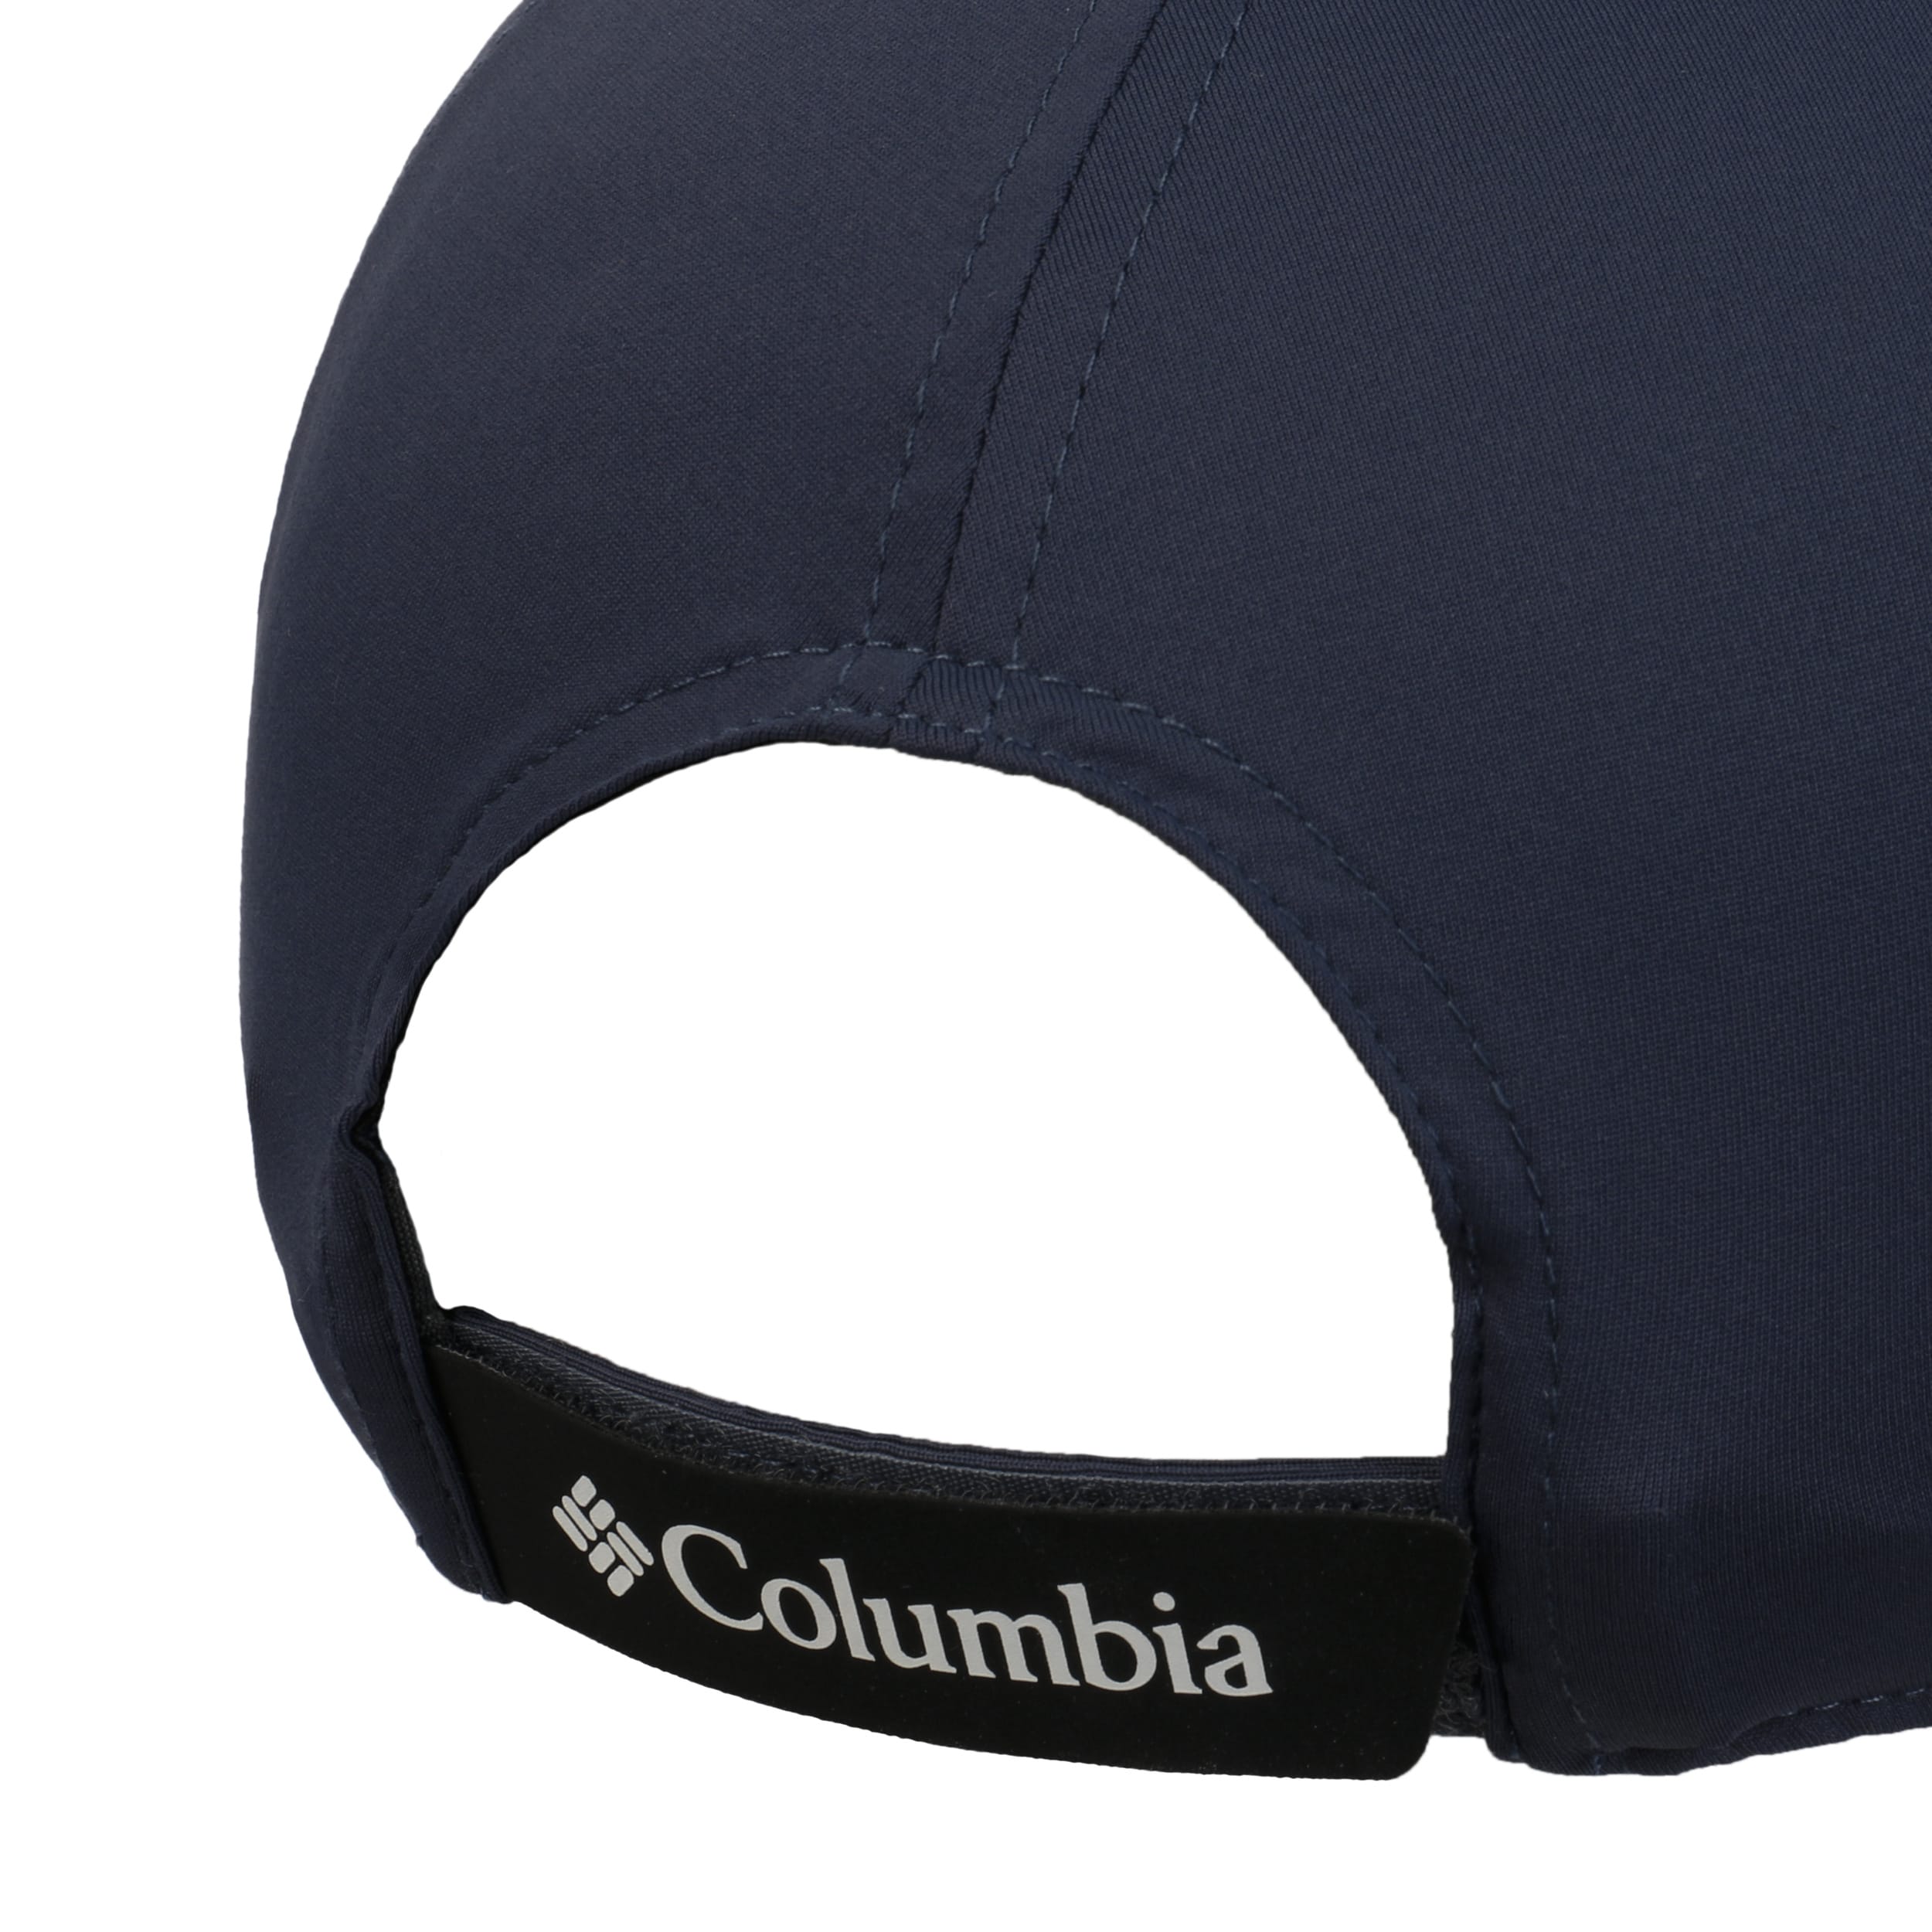 COLUMBIA Coolhead II Strapback Cap Basecap Baseballcap Outdoorcap